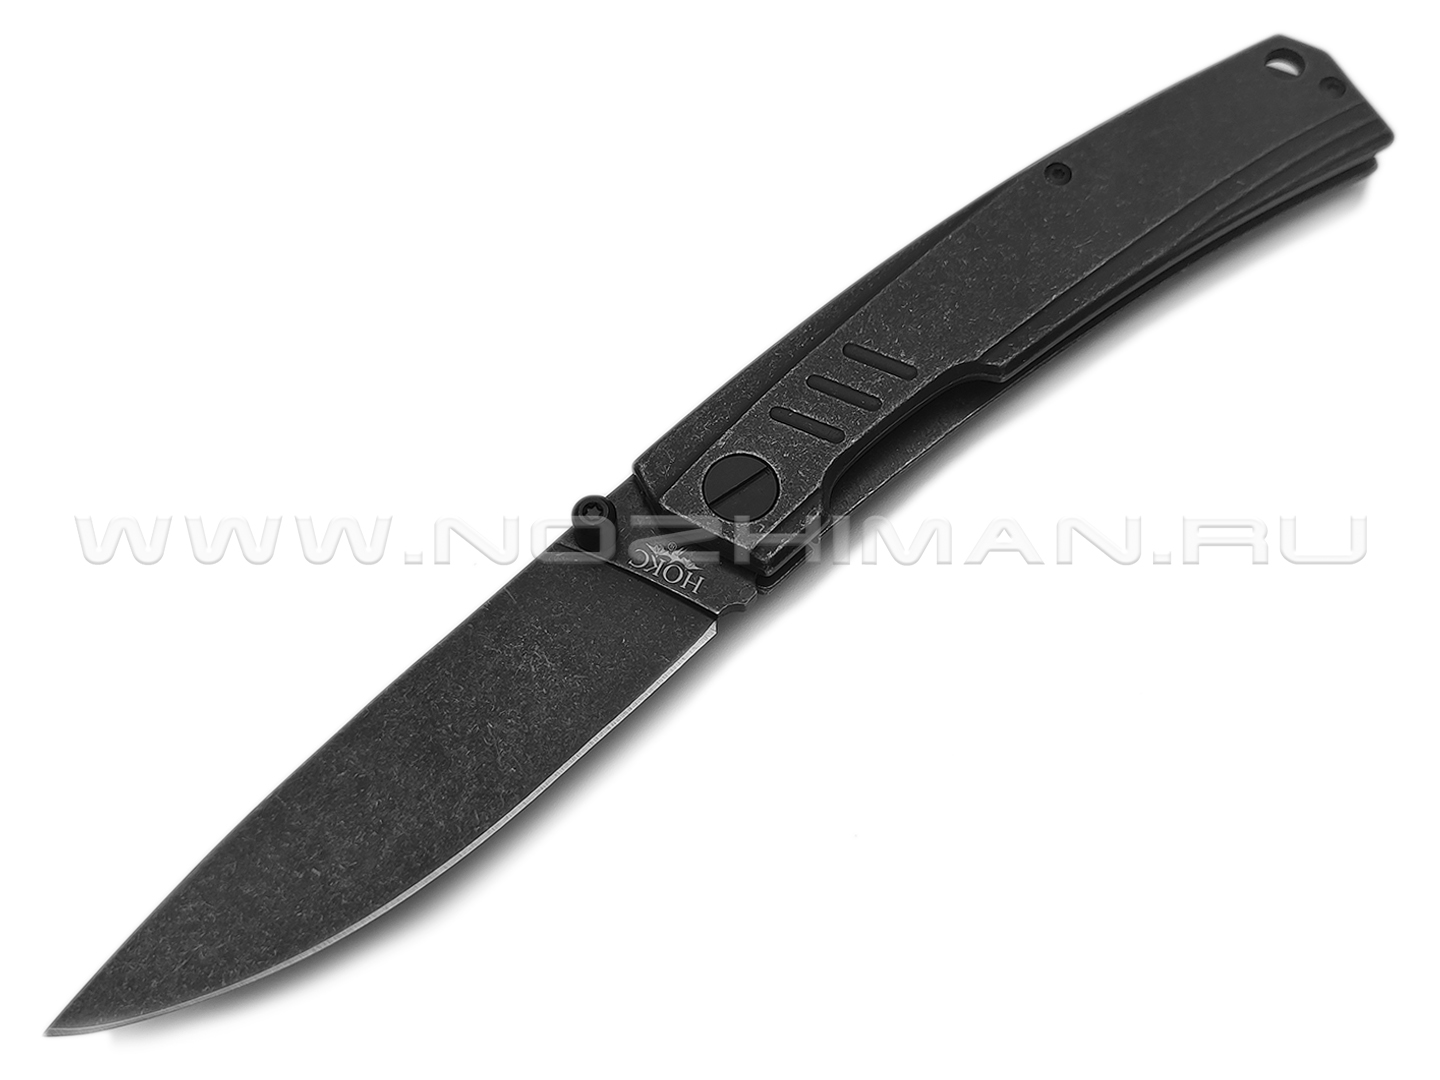 Нокс складной нож Капитан 333-580006 сталь Aus-8 blackwash, рукоять Stainless steel blackwash